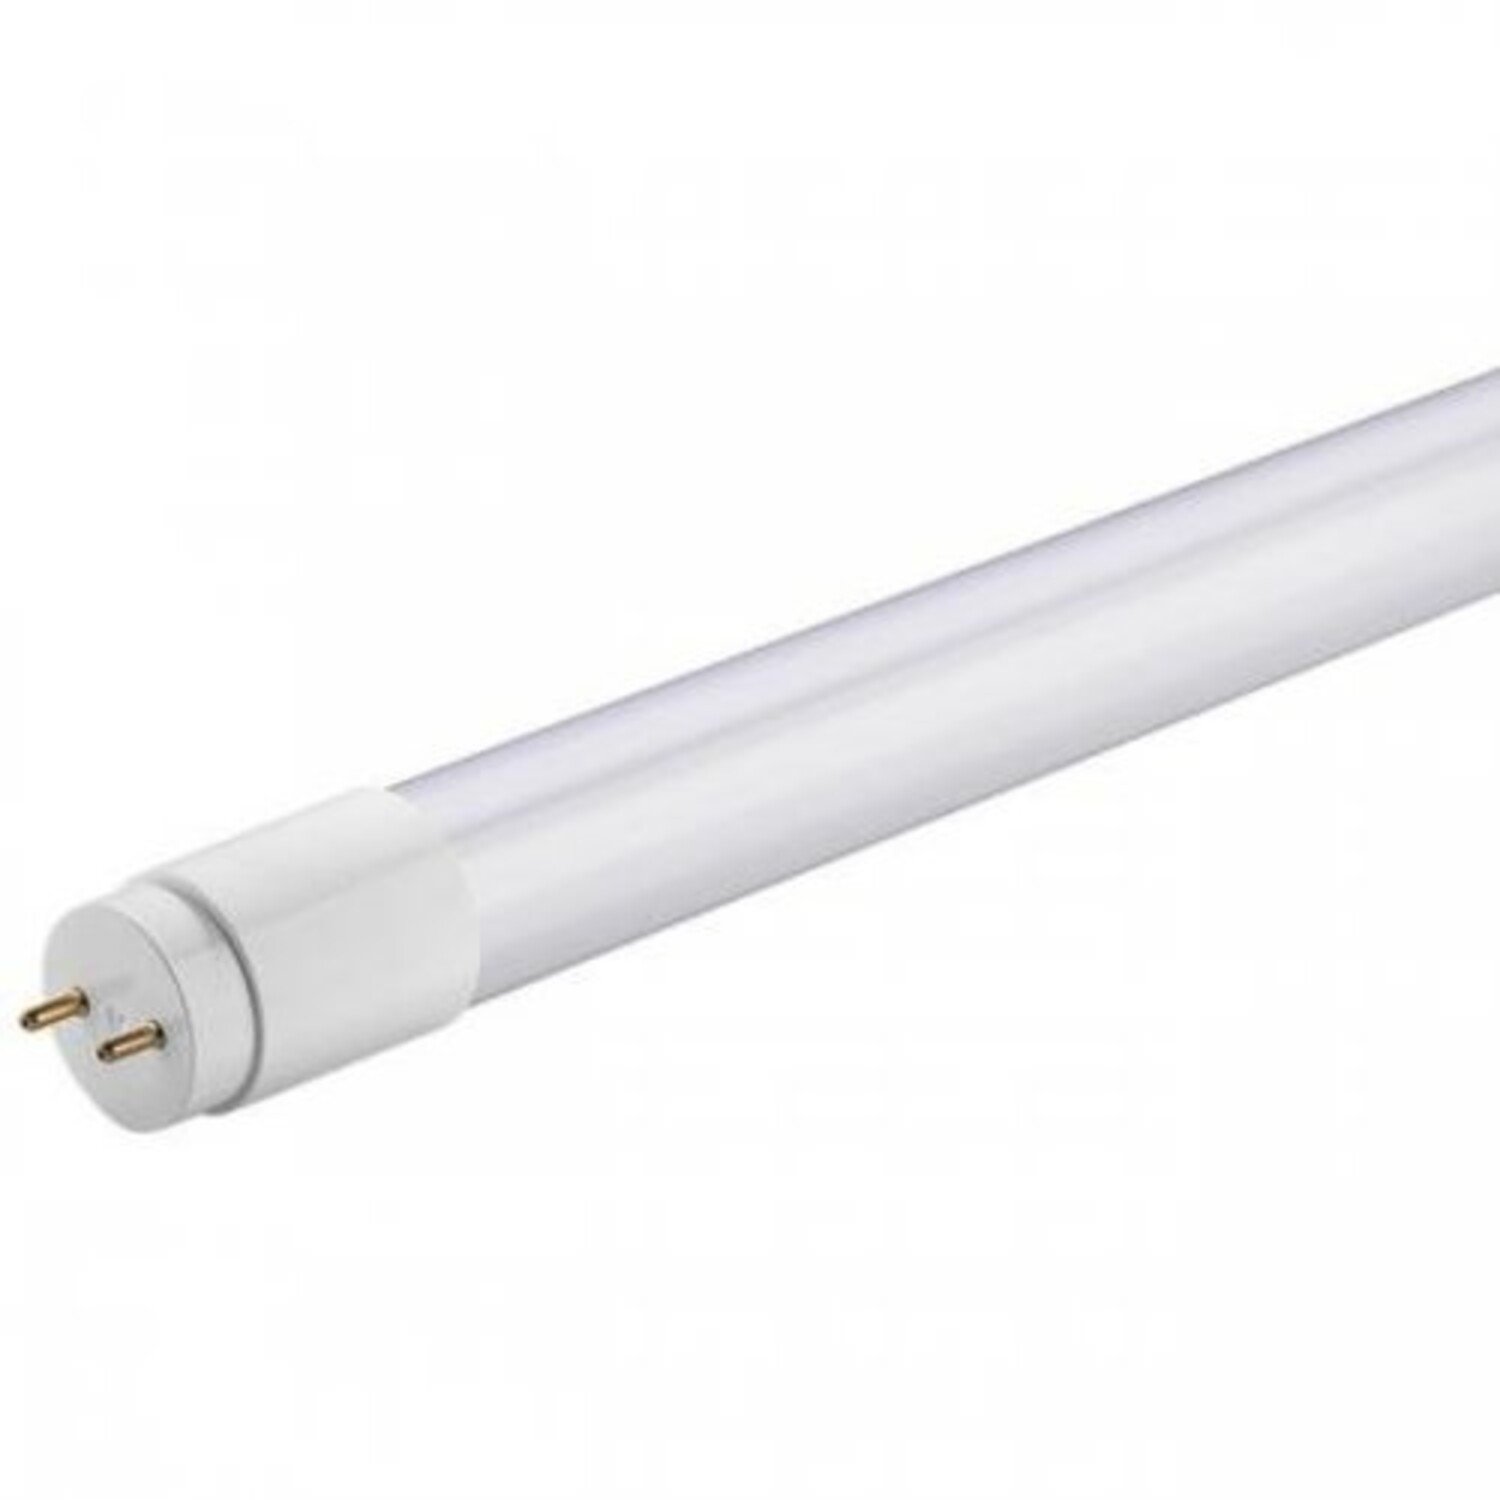 230V, 150cm Abschnitt, LED Lichtschlauch Premium Weiß, Dimmbar IP44